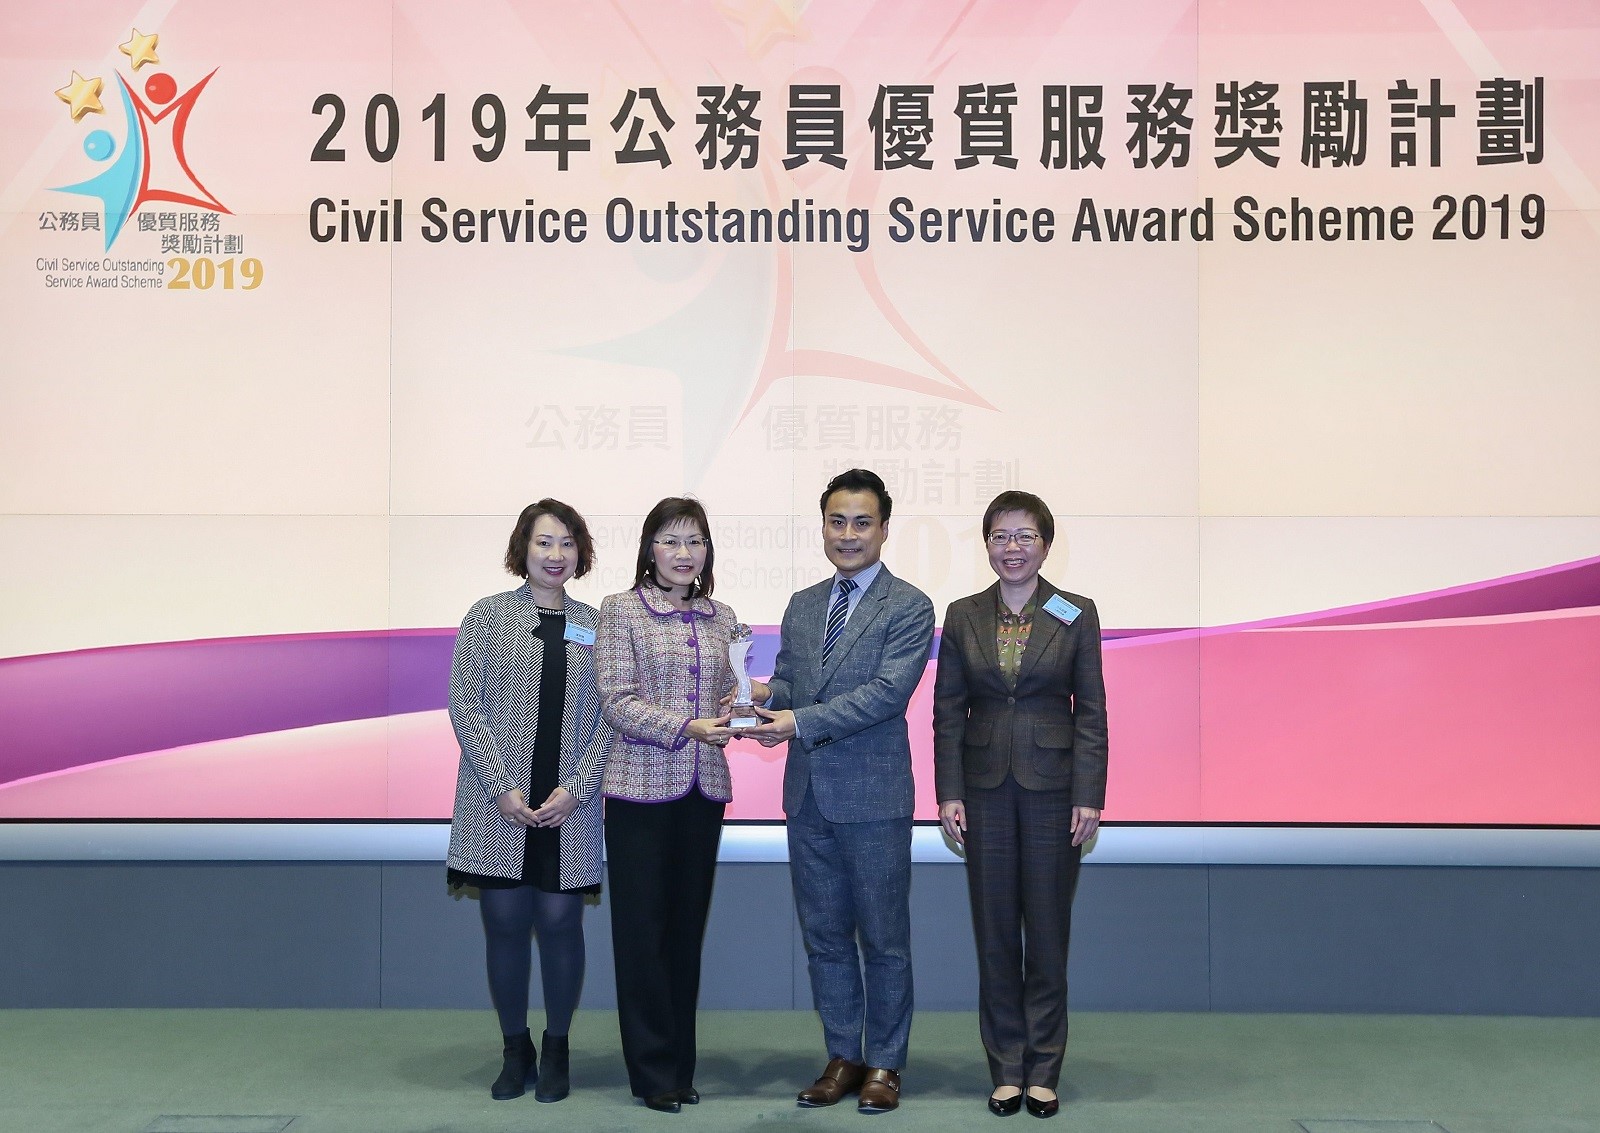 本 處 以 「 為 認 可 機 構 提 供 電 子 提 示 服 務 」 參 加 由 公 務 員 事 務 局 舉 辦 的 「 2019 年 公 務 員 優 質 服 務 獎 勵 計 劃 」 ， 榮 獲 「 部 門 精 進 服 務 獎 （ 小 部 門 組 別 ） 」 銀 獎 。